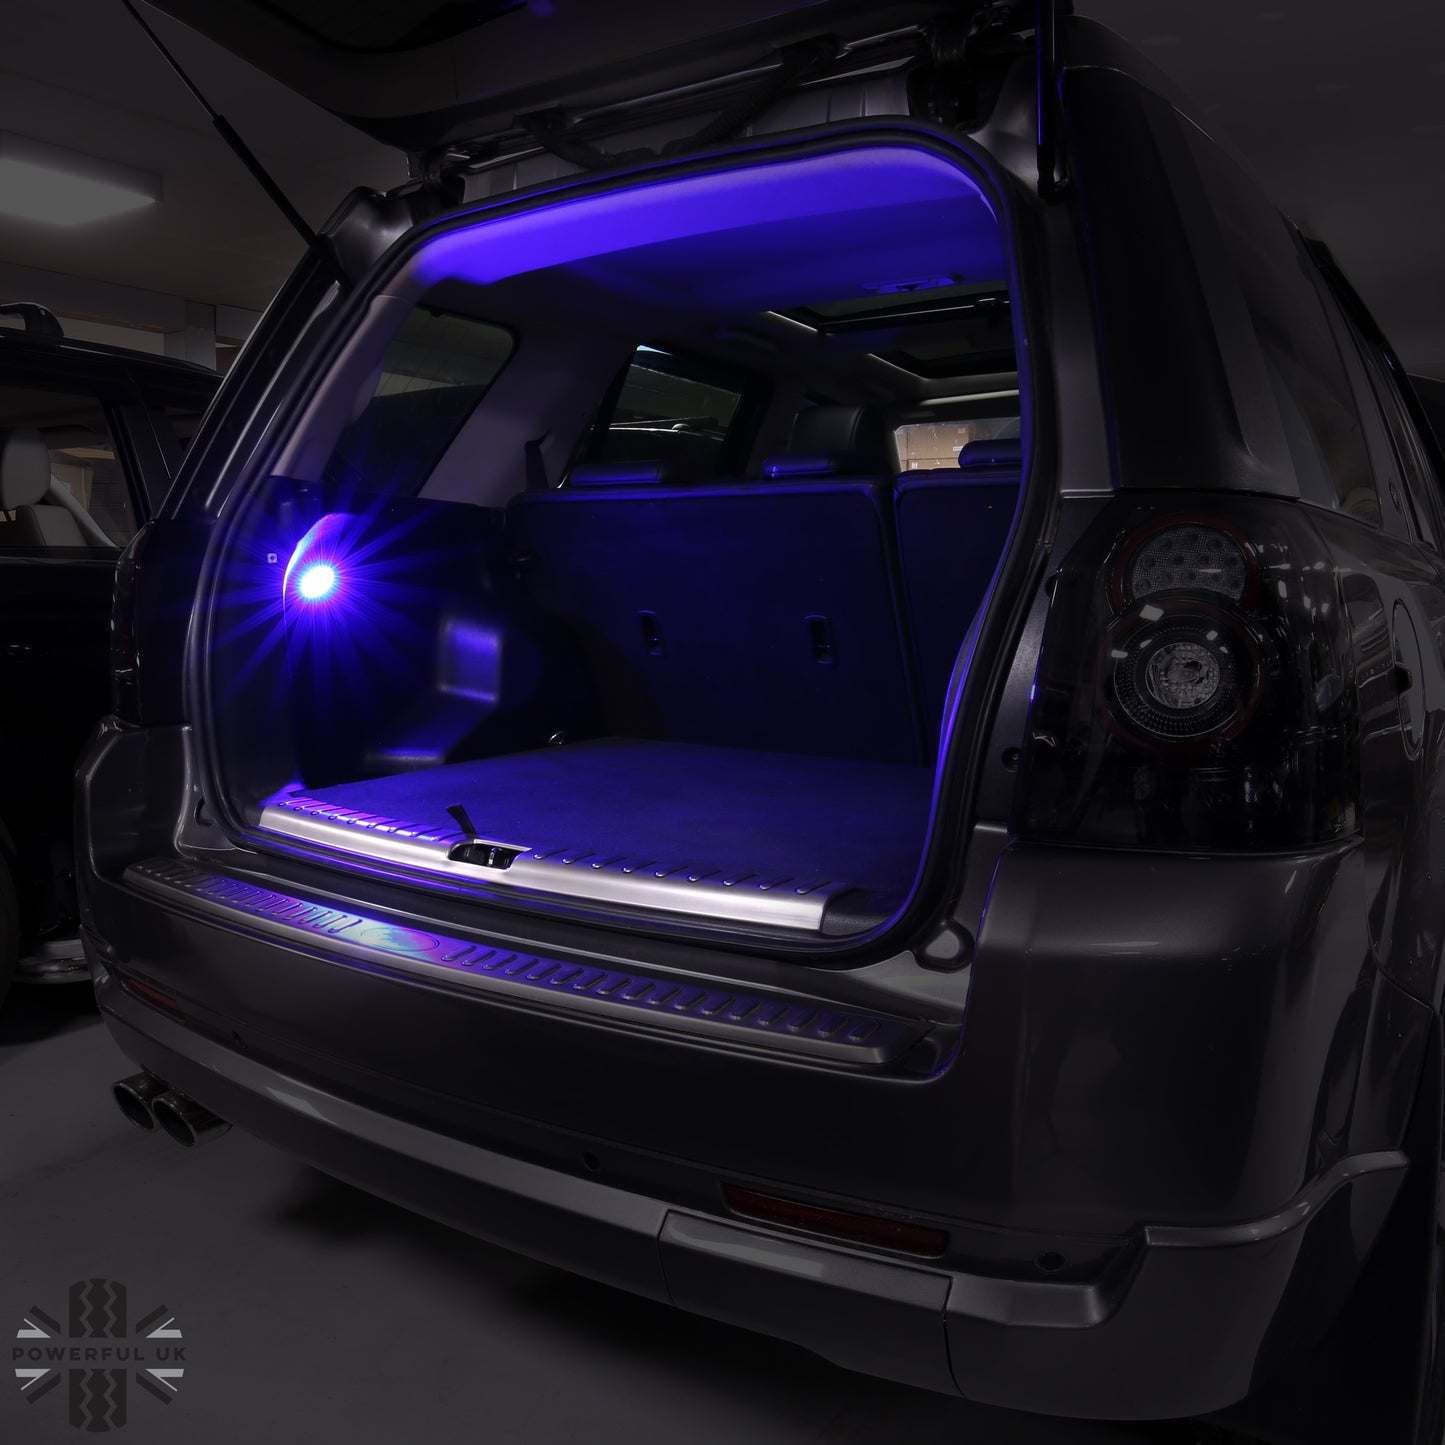 Interior Boot LED Light for Land Rover Freelander 2 - Blue